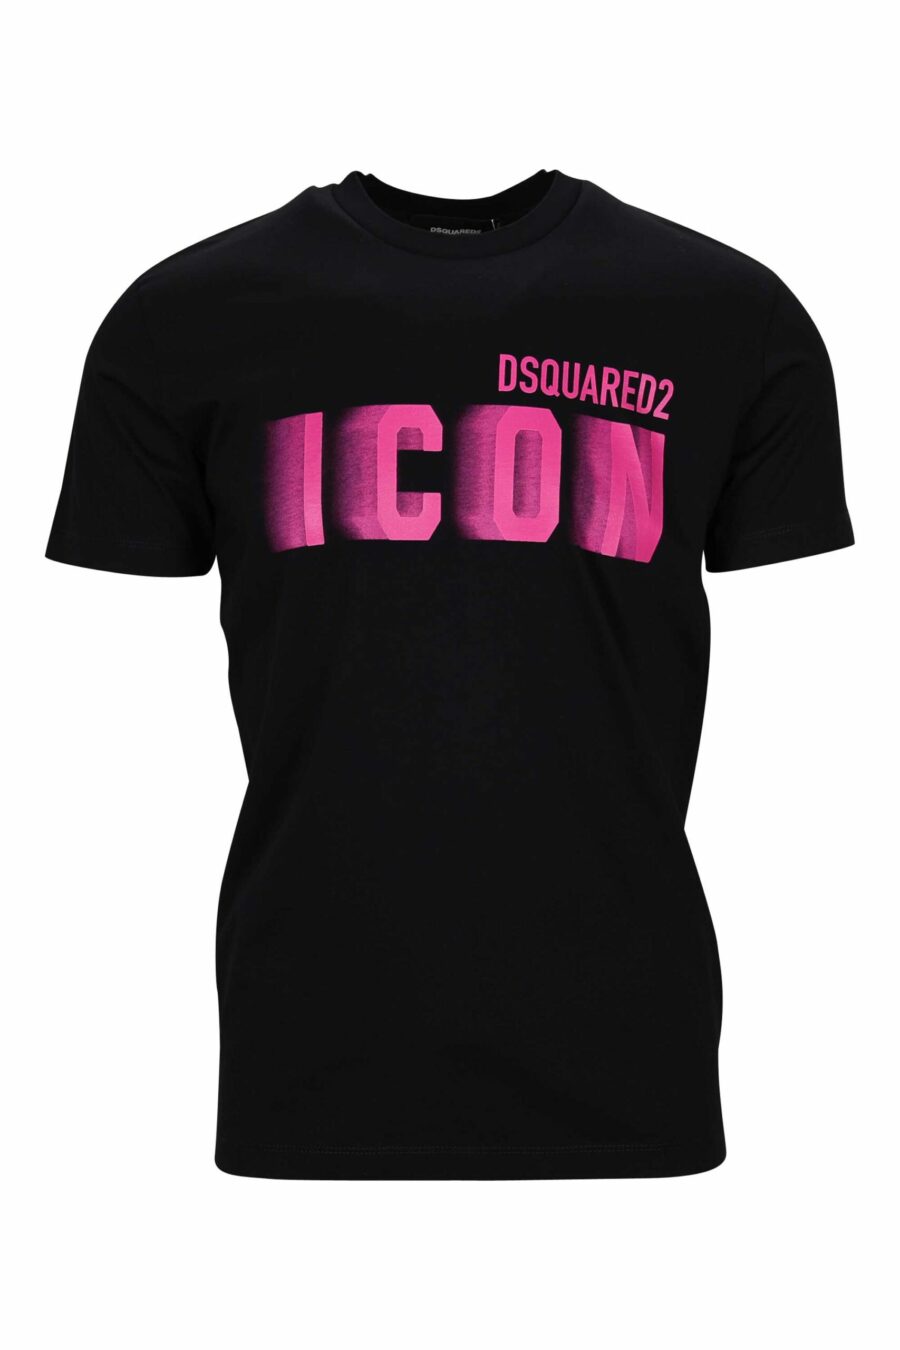 Camiseta negra con maxilogo "icon" fucsia neon borroso - 8054148359058 scaled